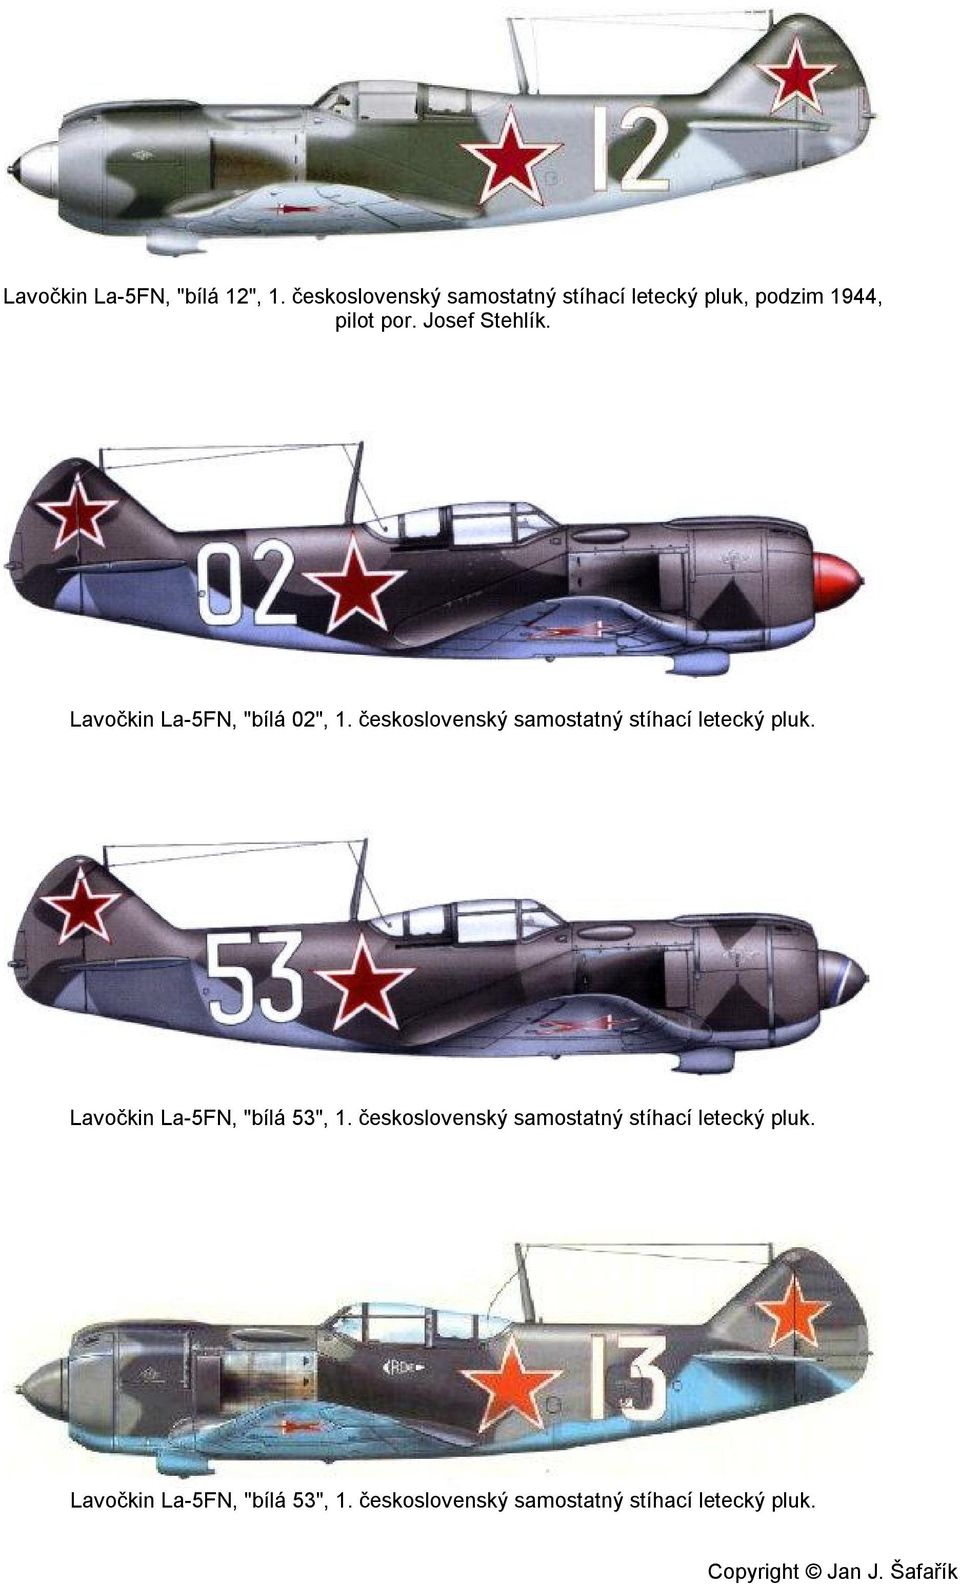 Lavočkin La-5FN, "bílá 02", 1. československý samostatný stíhací letecký pluk.